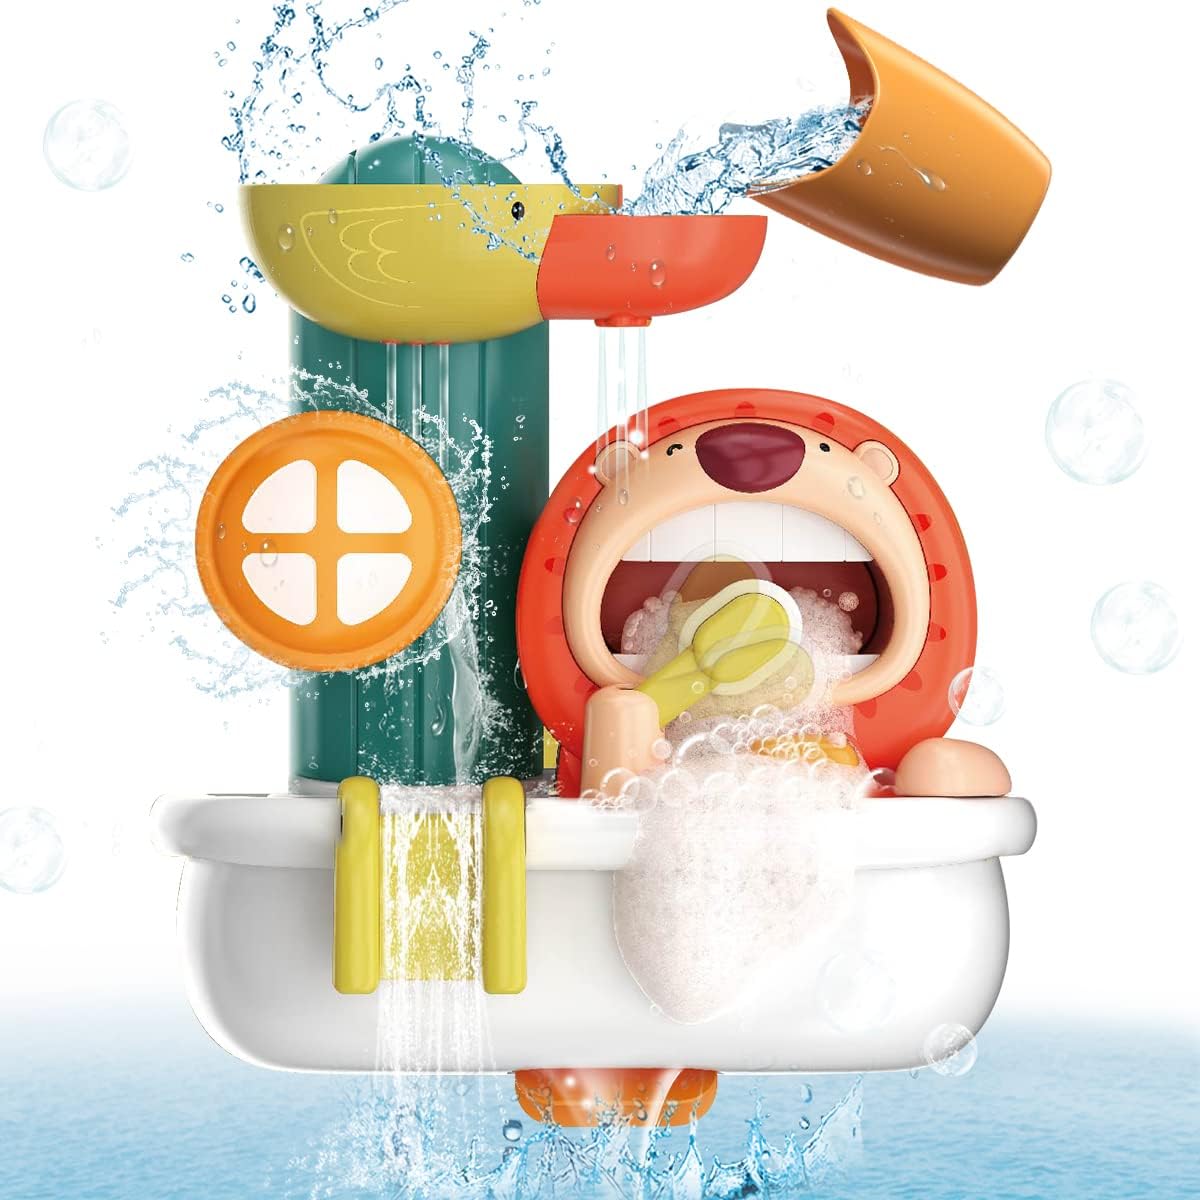 【入浴をもっと楽しくする】：子供たちはバスルームのおもちゃに水をやり、バスルームの機械は水循環を形成し、入浴してライオンボタンを押すことでライオンの歯を磨くのをシミュレートできます。 【手と目の協調性を発達させる】このお風呂用おもちゃは、子供たちへの素晴らしい学習ギフトでもあり、赤ちゃんの精神的および協調性のスキルを発達させるのに役立ちます。 幼児はカップに水を入れ、シャワーでプロペラを回転させて滝を作り、ベビーシャワーのおもちゃで遊ぶことで、手と目の協調、運動能力、形の認識を発達させることができます。 【安全で電池不要で滑らかなエッジ】：バスルームの壁のおもちゃは、耐久性のあるプラスチック素材とBPAを含まないお風呂用おもちゃでできており、1 234歳の男の子と女の子のための環境にやさしく安全で楽しいお風呂用おもちゃです。 浴槽のおもちゃは滑らかなエッジを持ち、よくできています。 このお風呂用おもちゃは電池を必要としません。 これにより、赤ちゃんが怪我をすることを心配する必要がなくなります。 【取り付けと乾燥が簡単】：浴槽のおもちゃの裏側に4つの頑丈な吸盤があります。吸盤を浴槽またはバスルームの滑らかな壁に固定するだけです。 どこでも変更して、いつでも再接続できます。 お風呂用おもちゃは空気を循環させて水を完全に排出させ、お風呂用おもちゃを完全にきれいにすることができるので、乾いた清潔な状態を簡単に保つことができます。 【幼児向けギフトに最適】：子供たちが入浴に夢中になるバスルームプレイセットは、子供たちのクリスマス、イースター、誕生日、その他のホリデーギフトに最適です。